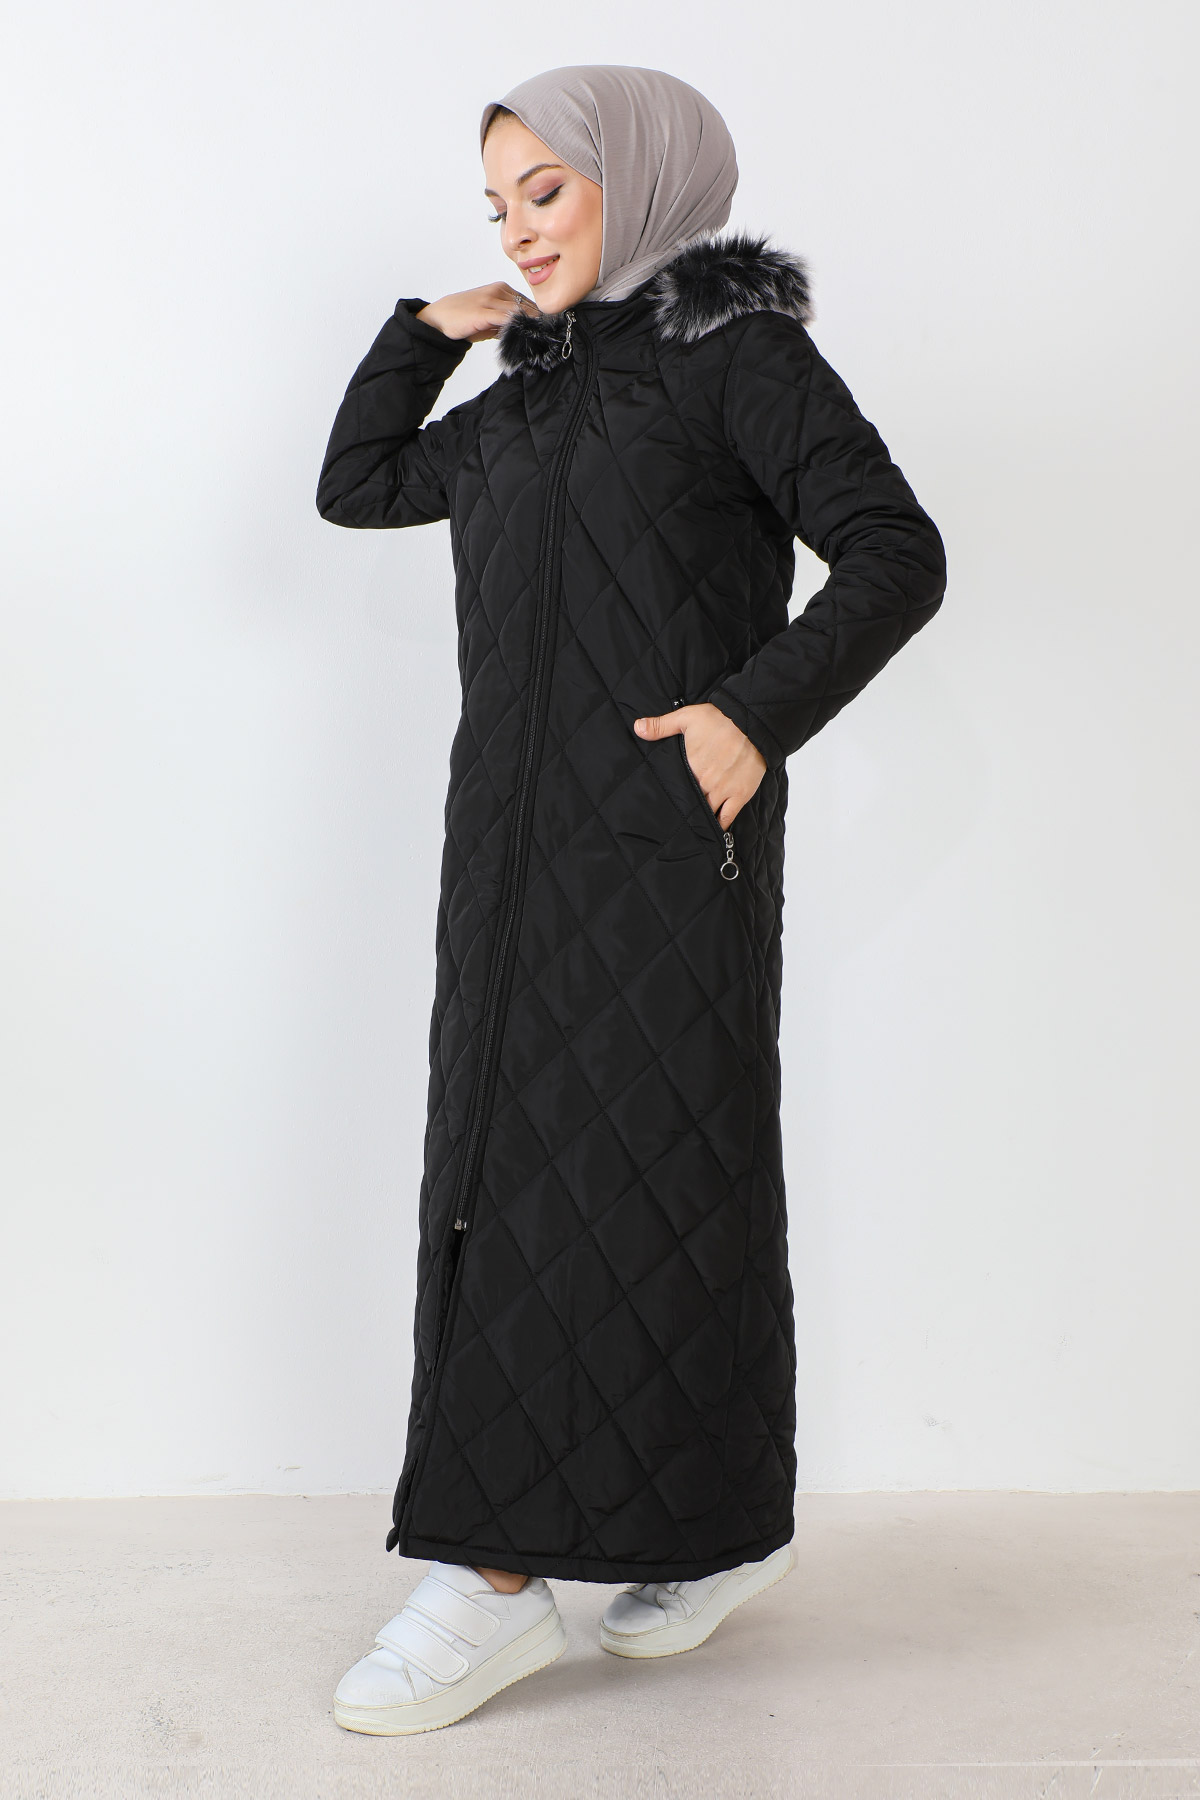 modern turkish hijab fashion